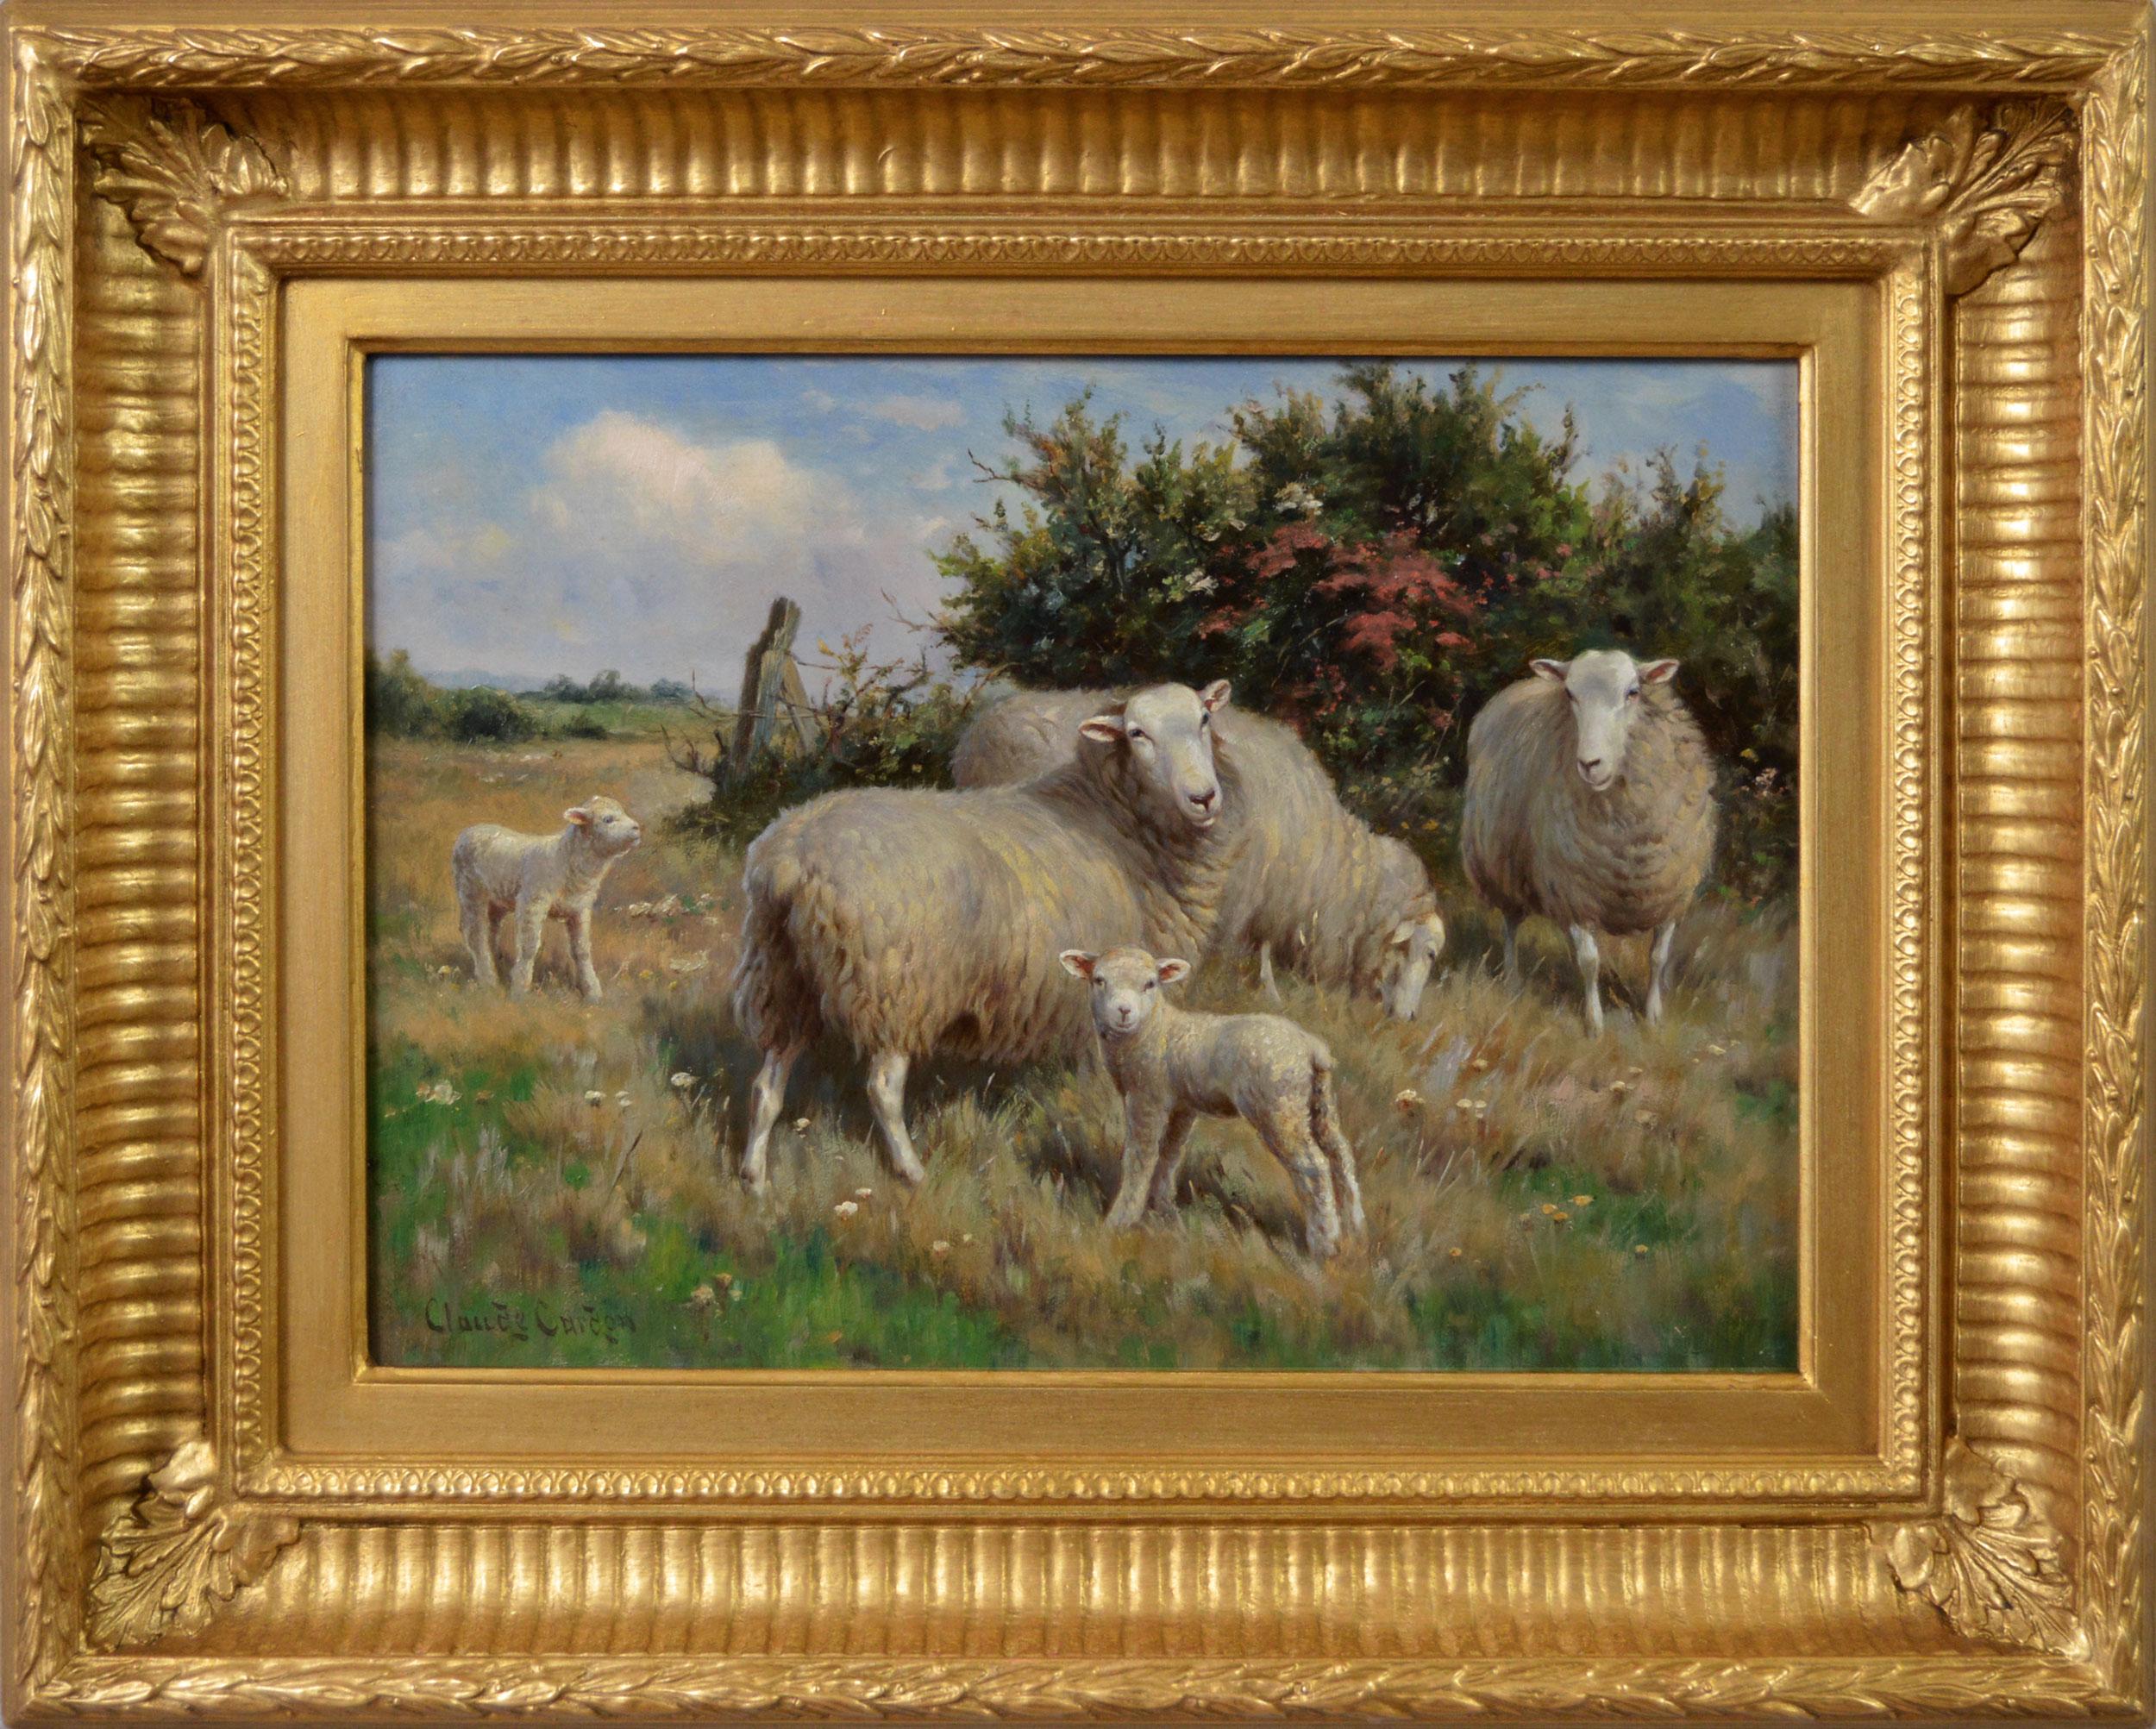 Animal Painting Claude Cardon - Peinture à l'huile du 19e siècle représentant des animaux de lapins et des agneaux